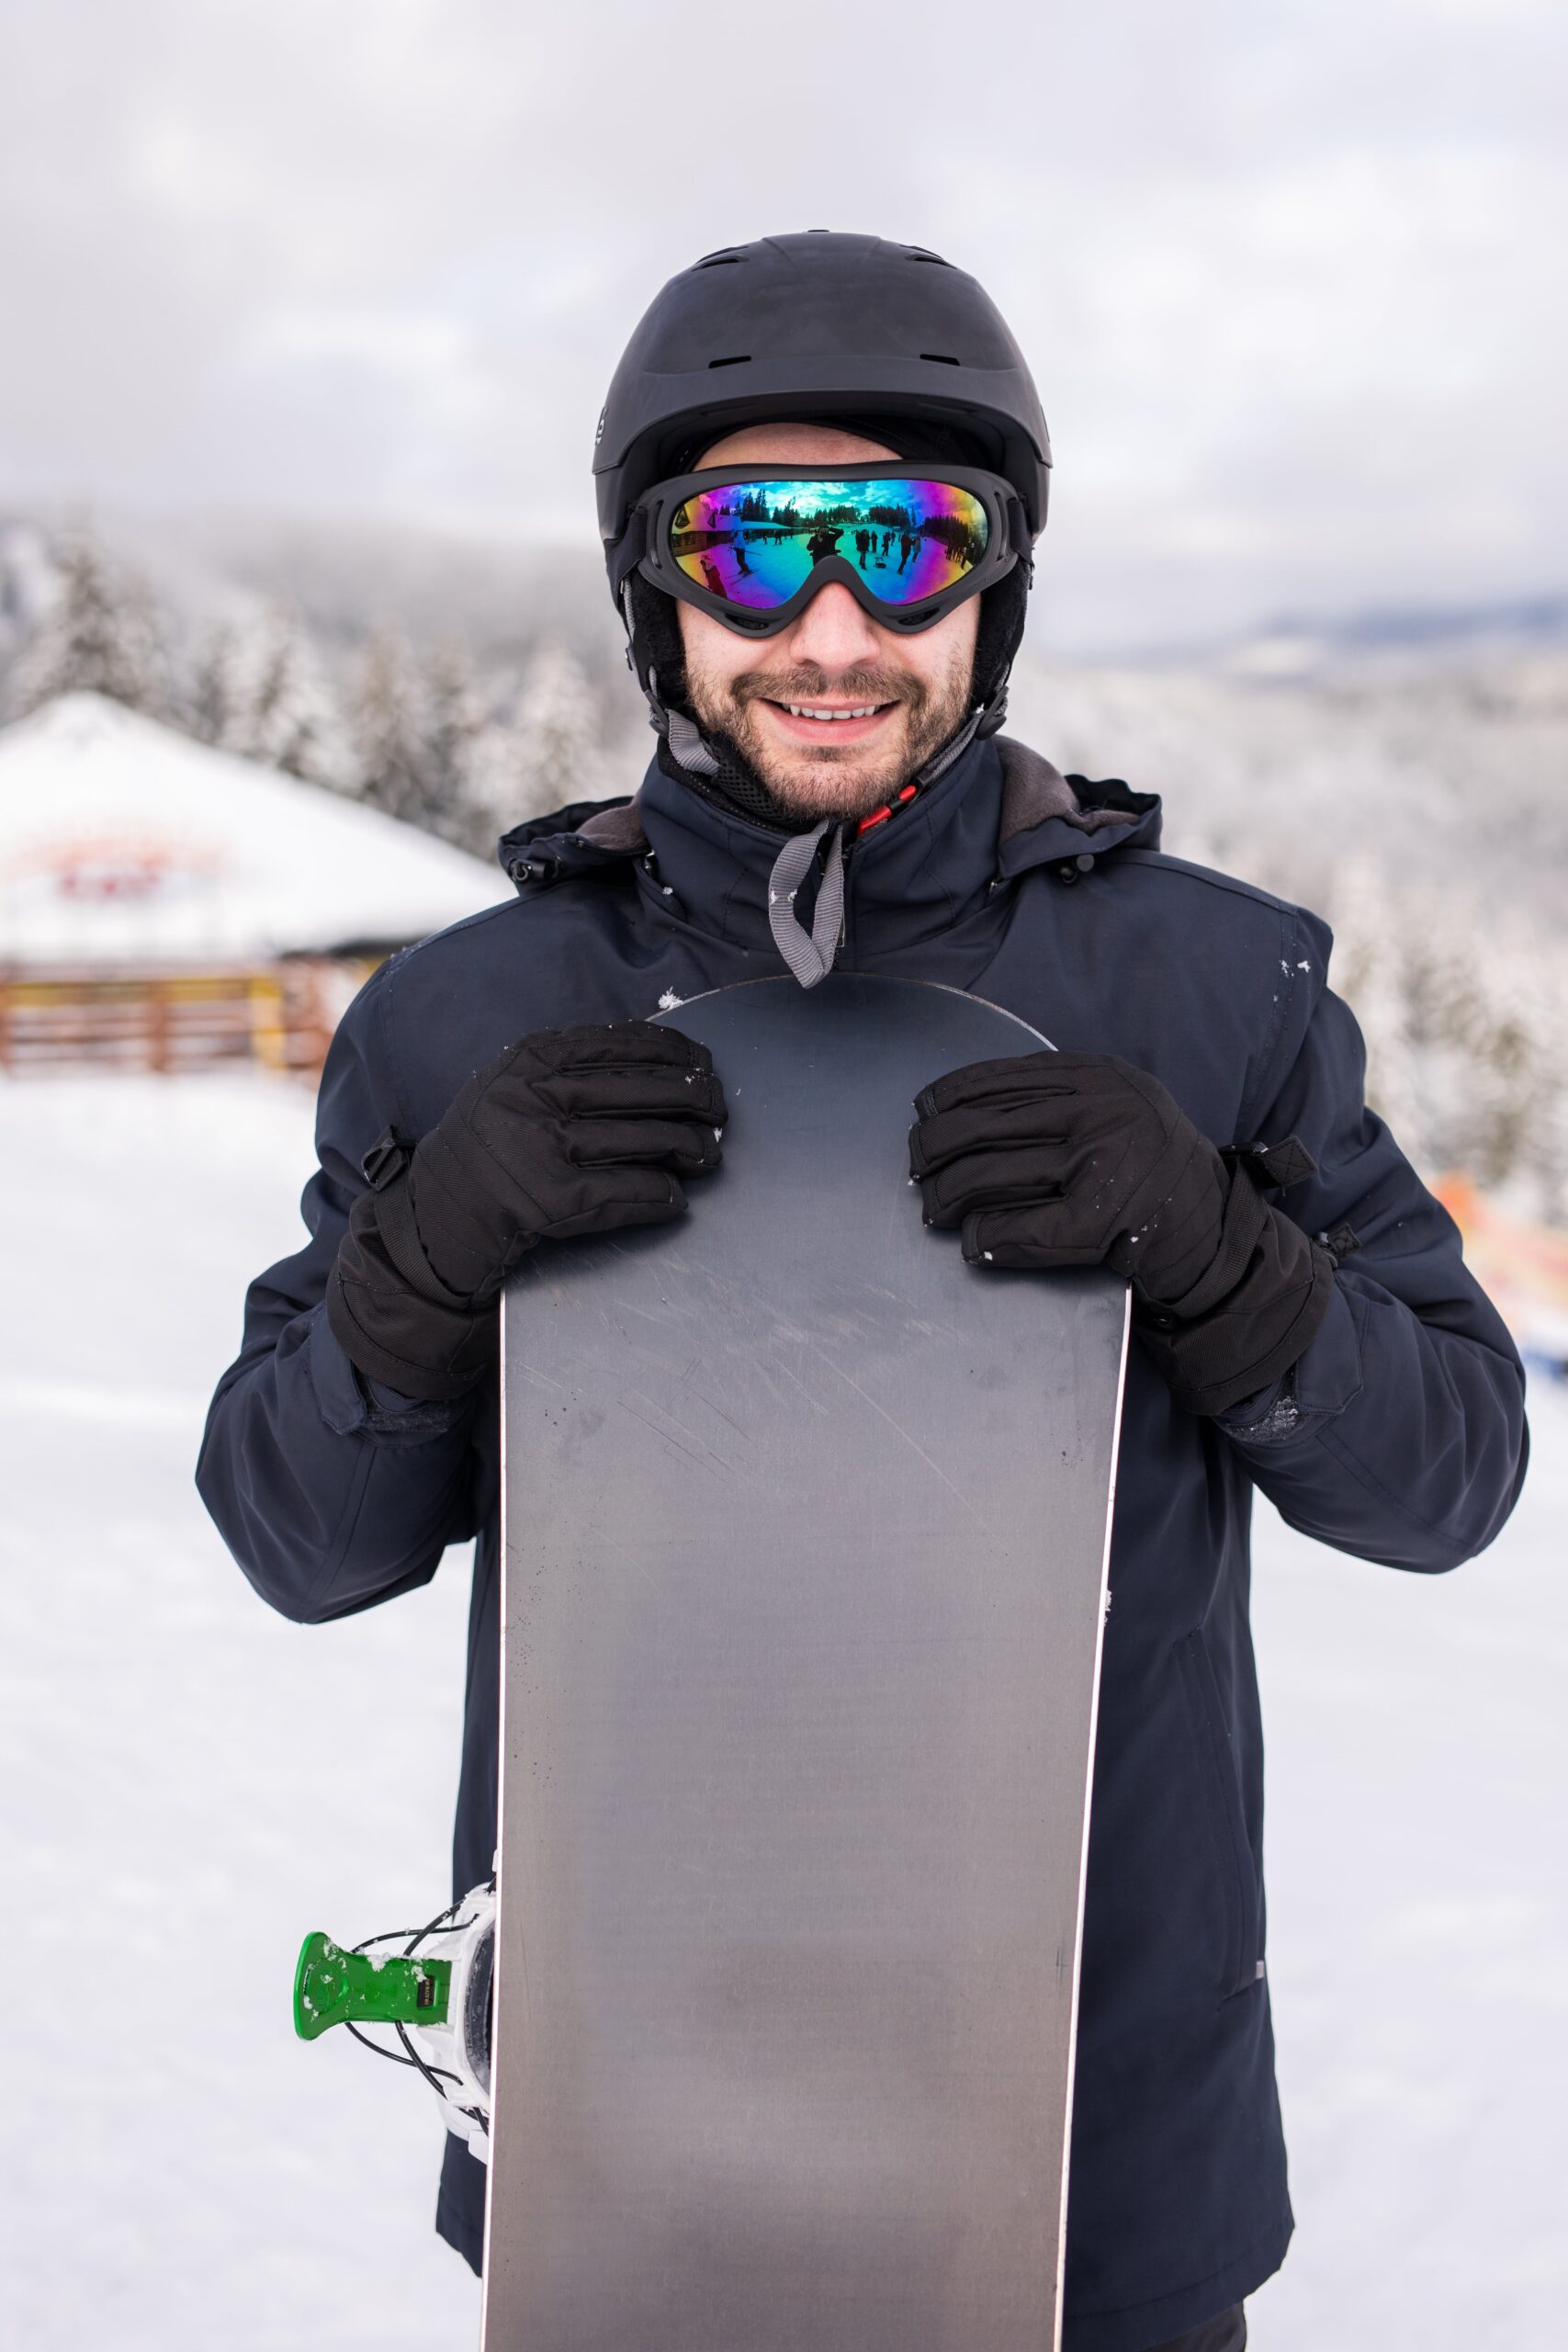 marc lefevre en snowboard